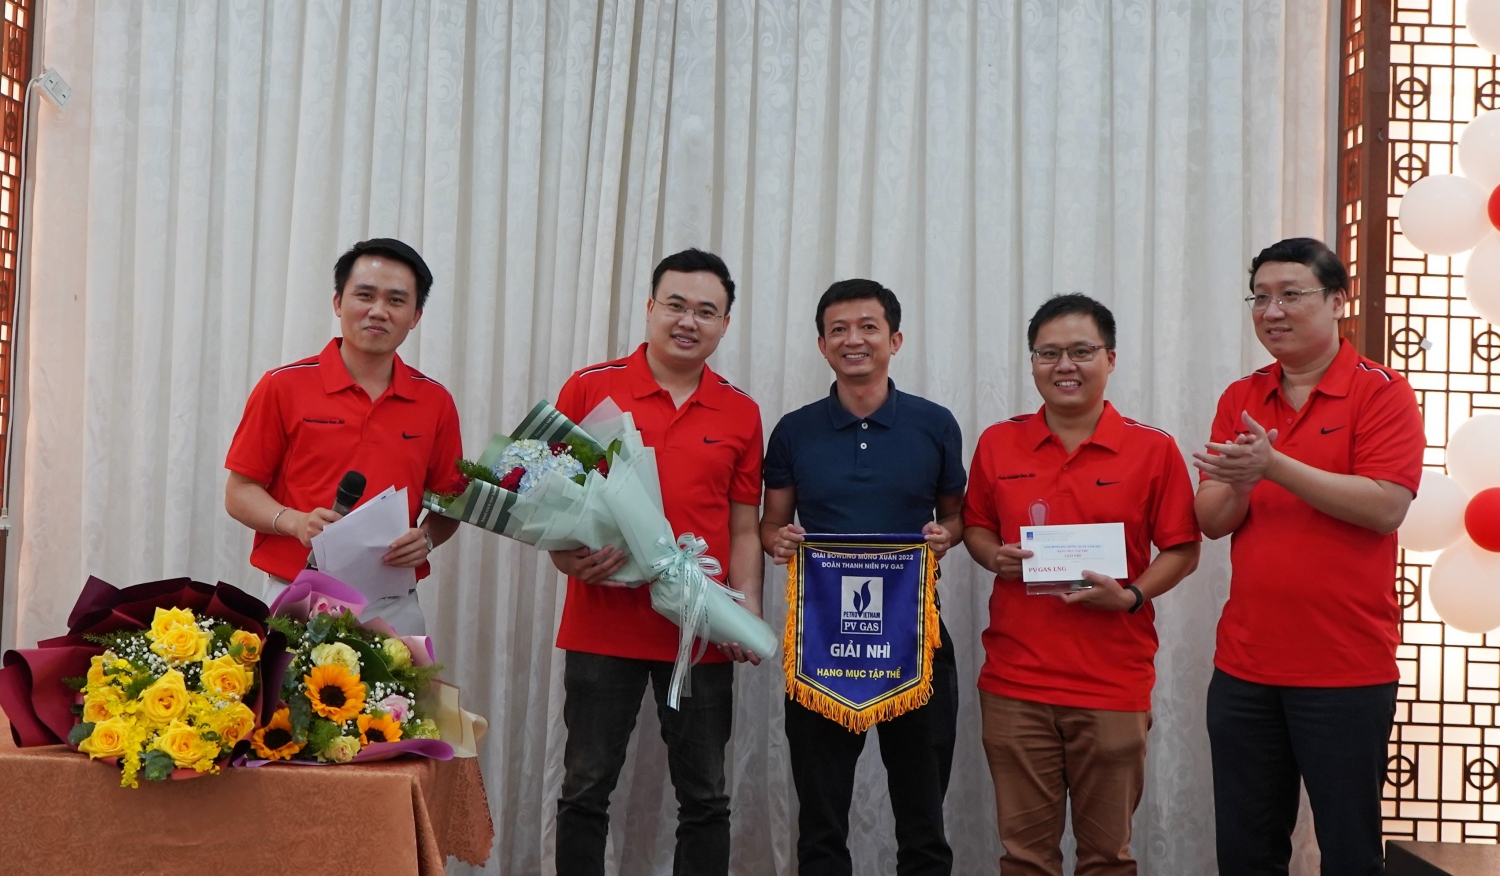 Đội giải Nhì nhận khen thưởng từ BTC